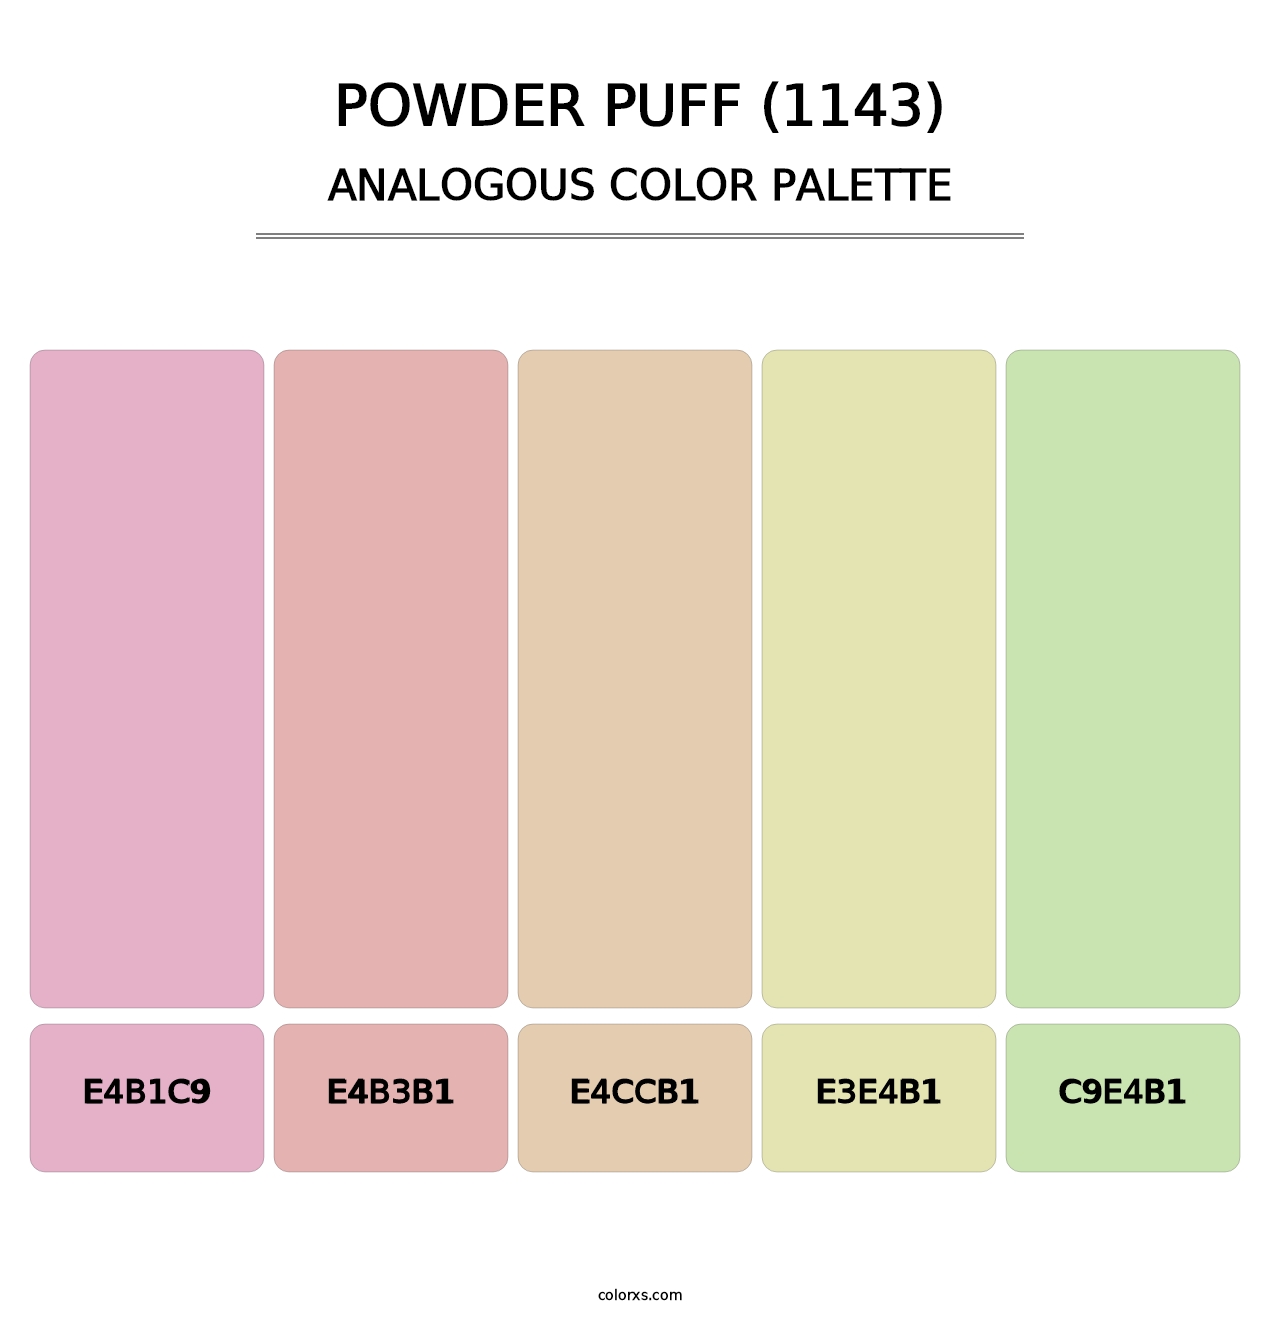 Powder Puff (1143) - Analogous Color Palette